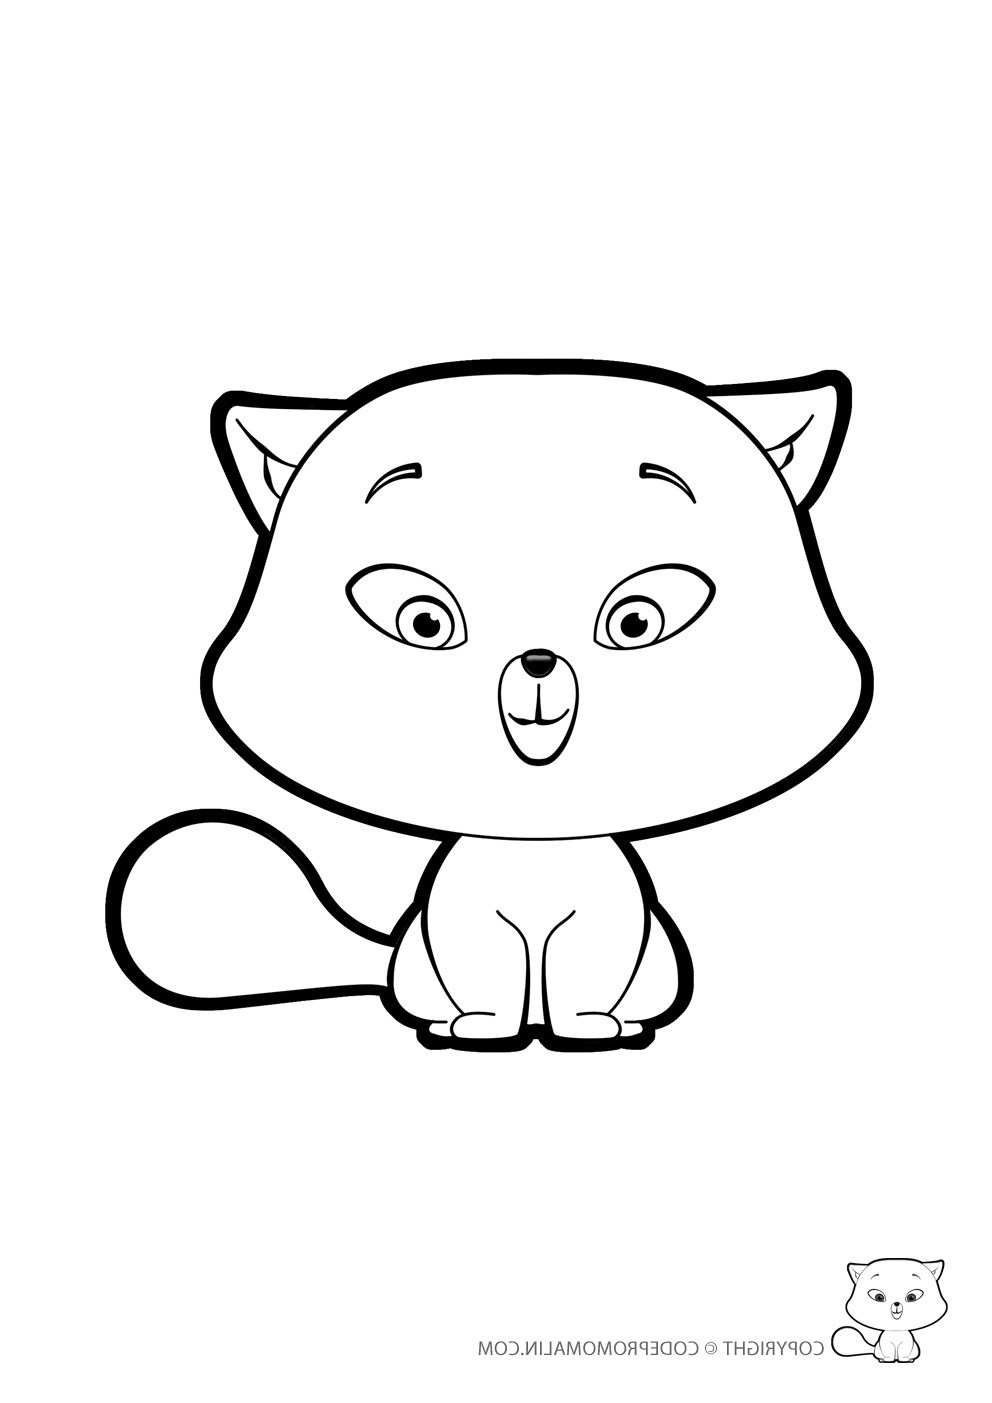 5664 dessin kawaii trop mignon a imprimer dessin de manga 7119 chaton chat mignon coloriage dessin